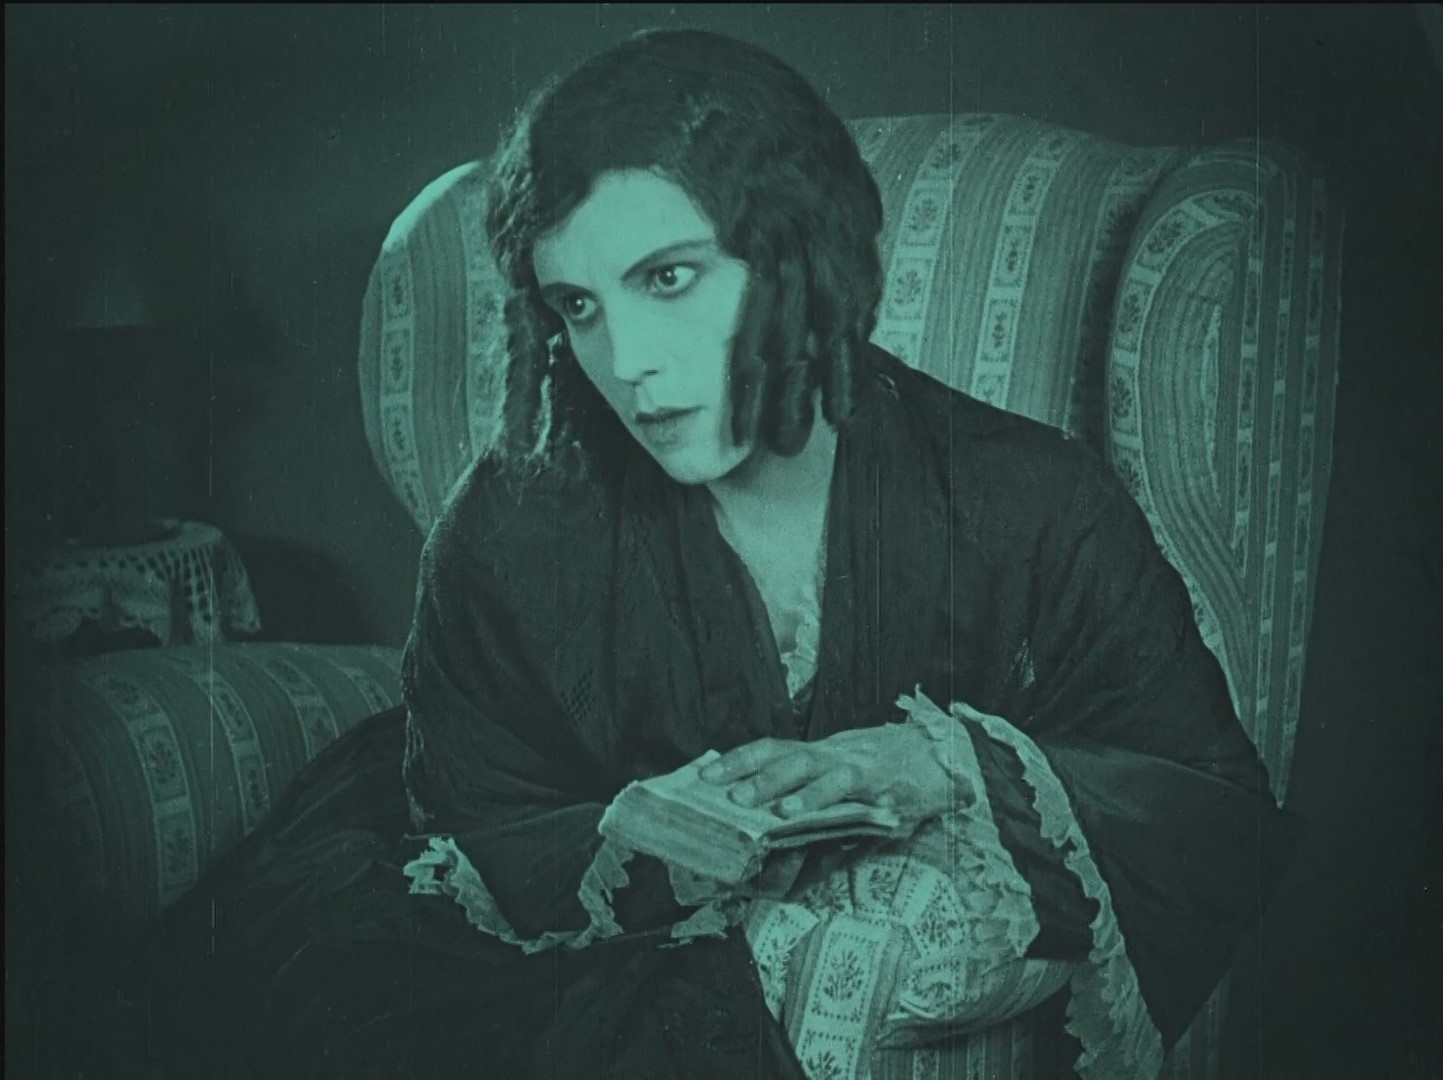 Greta Schroeder dans le film Nosferatu Eine Symphonie des Grauens (Nosferatu, une symphonie de l'horreur, 1922) de Friedrich Wilhelm Murnau